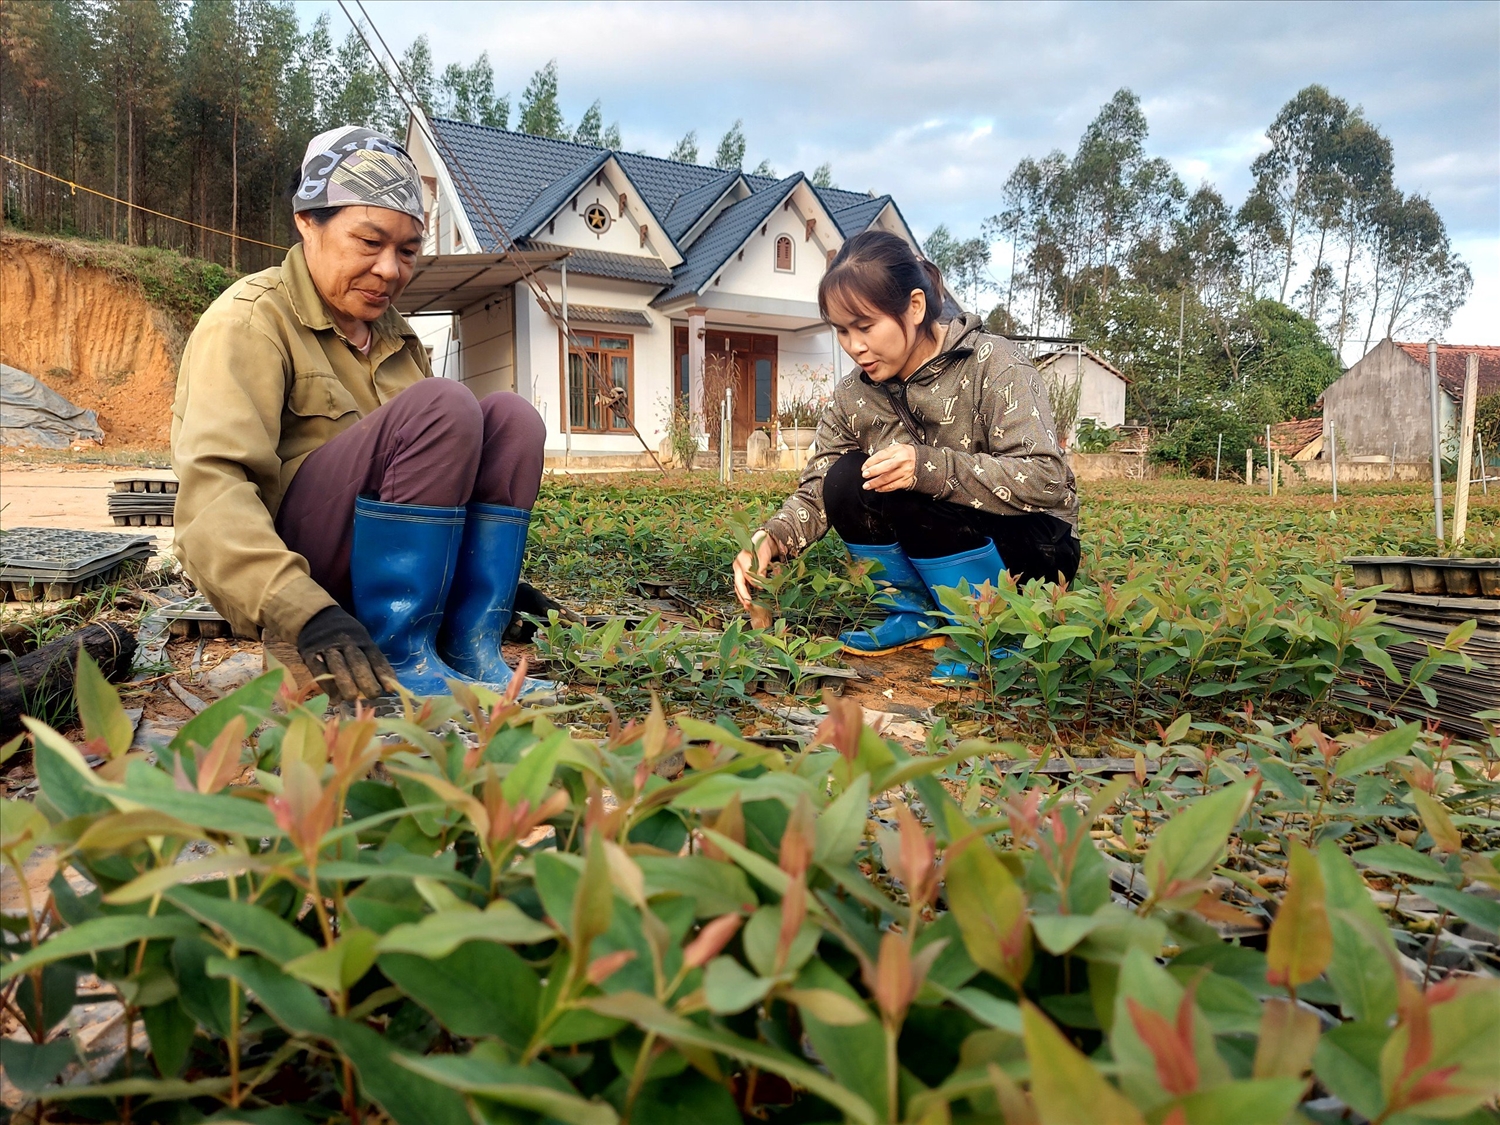 Người dân huyện vùng cao Sơn Động tích cực sản xuất, phát triển kinh tế, giảm nghèo bền vững.